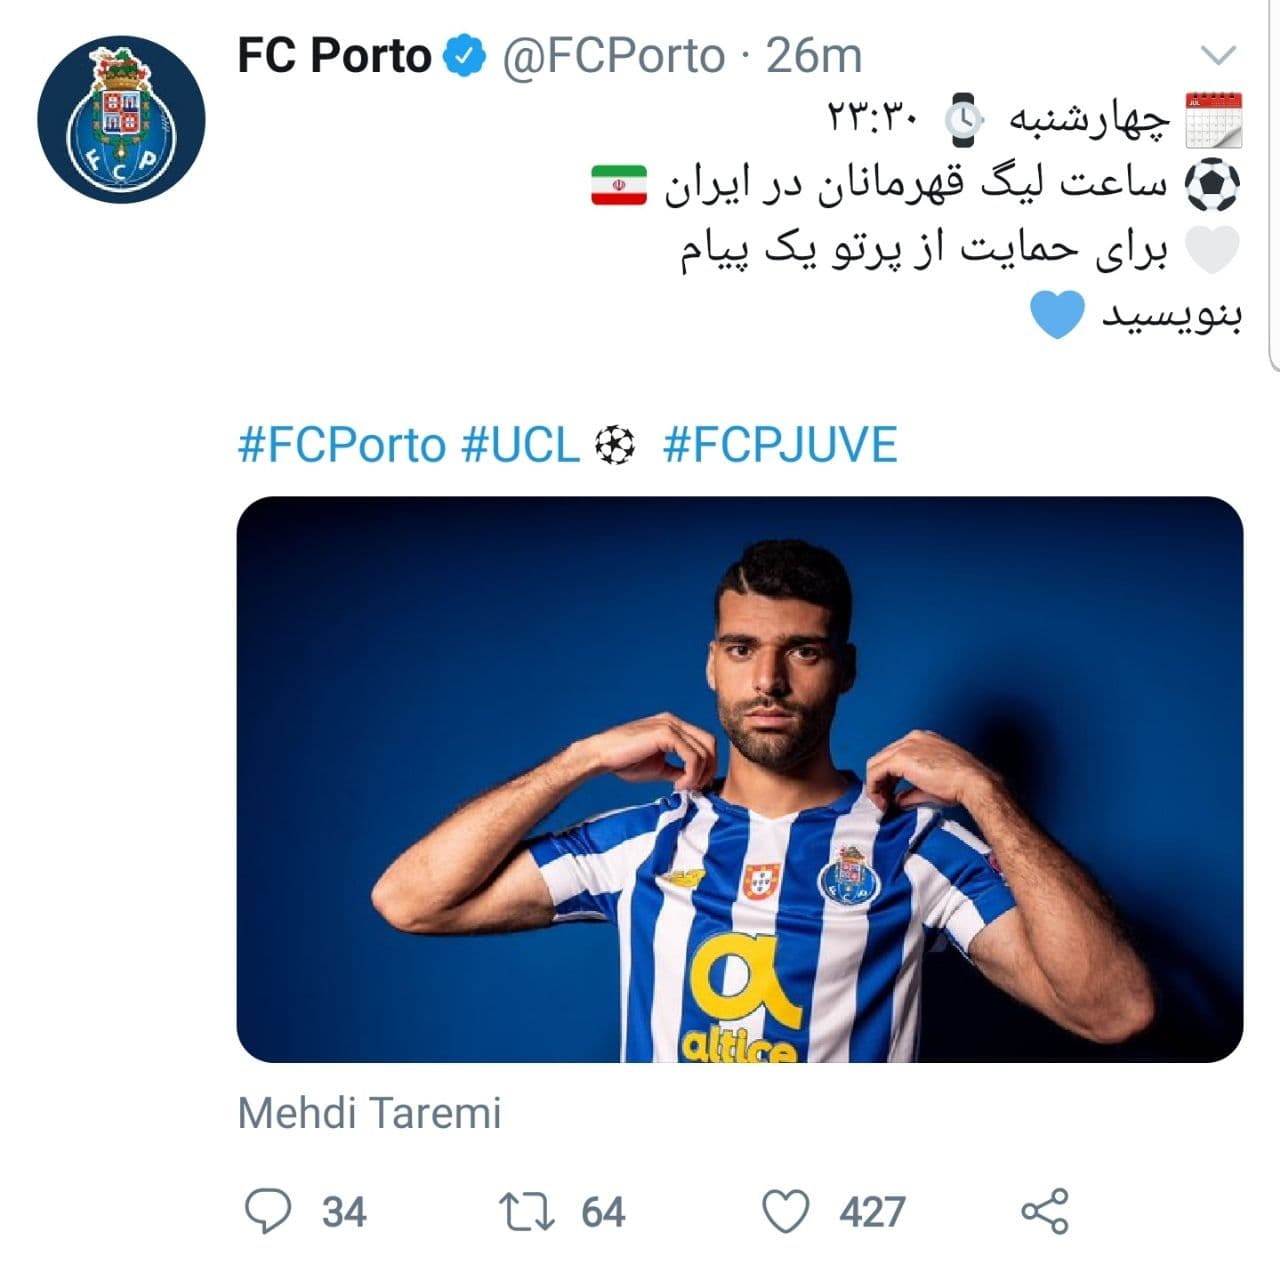                                                    درخواست باشگاه پورتو از هواداران ایرانی                                       